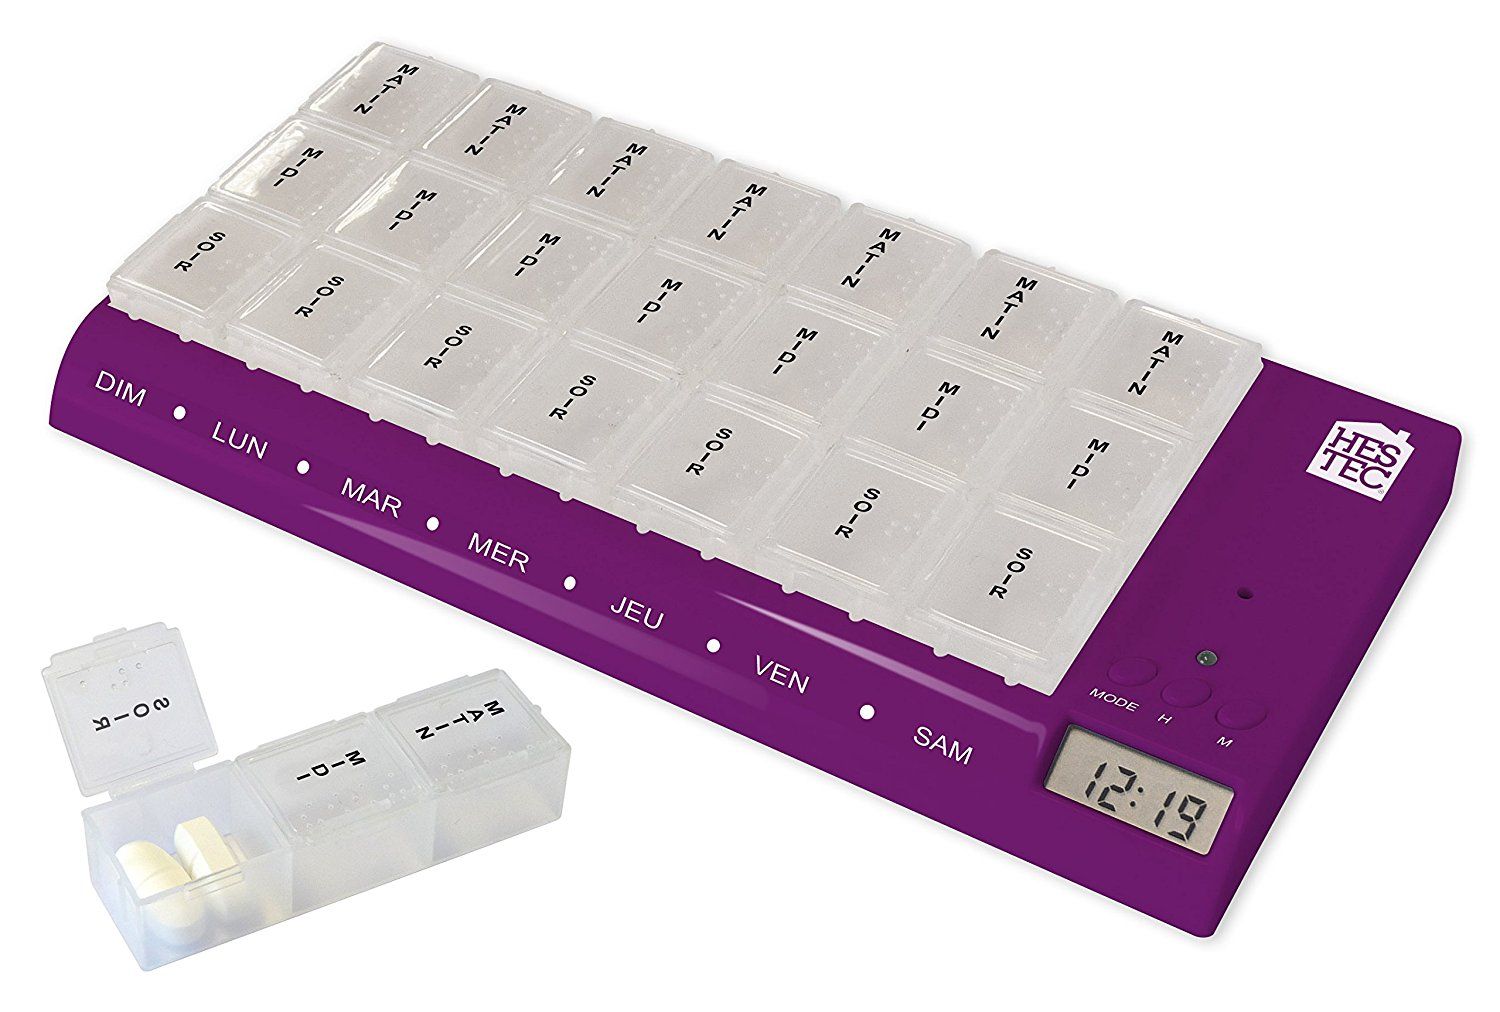 Porta-pastiglie giornaliero Handy Box a basso costo sul nostro sito